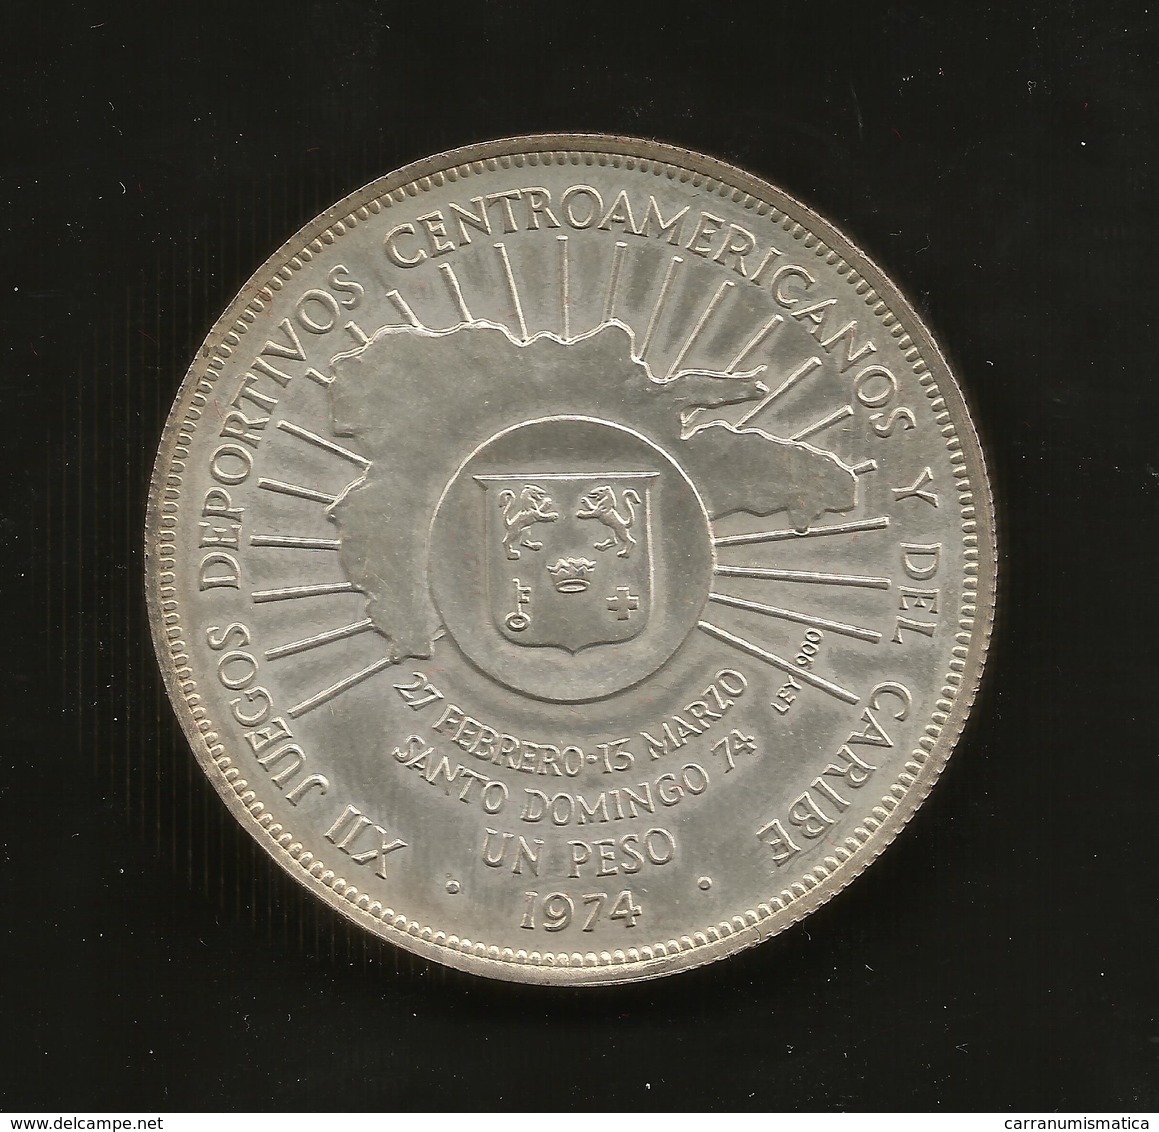 Dominican Republic - One Peso ( 1974 Games / Juegos ) Silver - Repubblica Dominicana - Dominicana